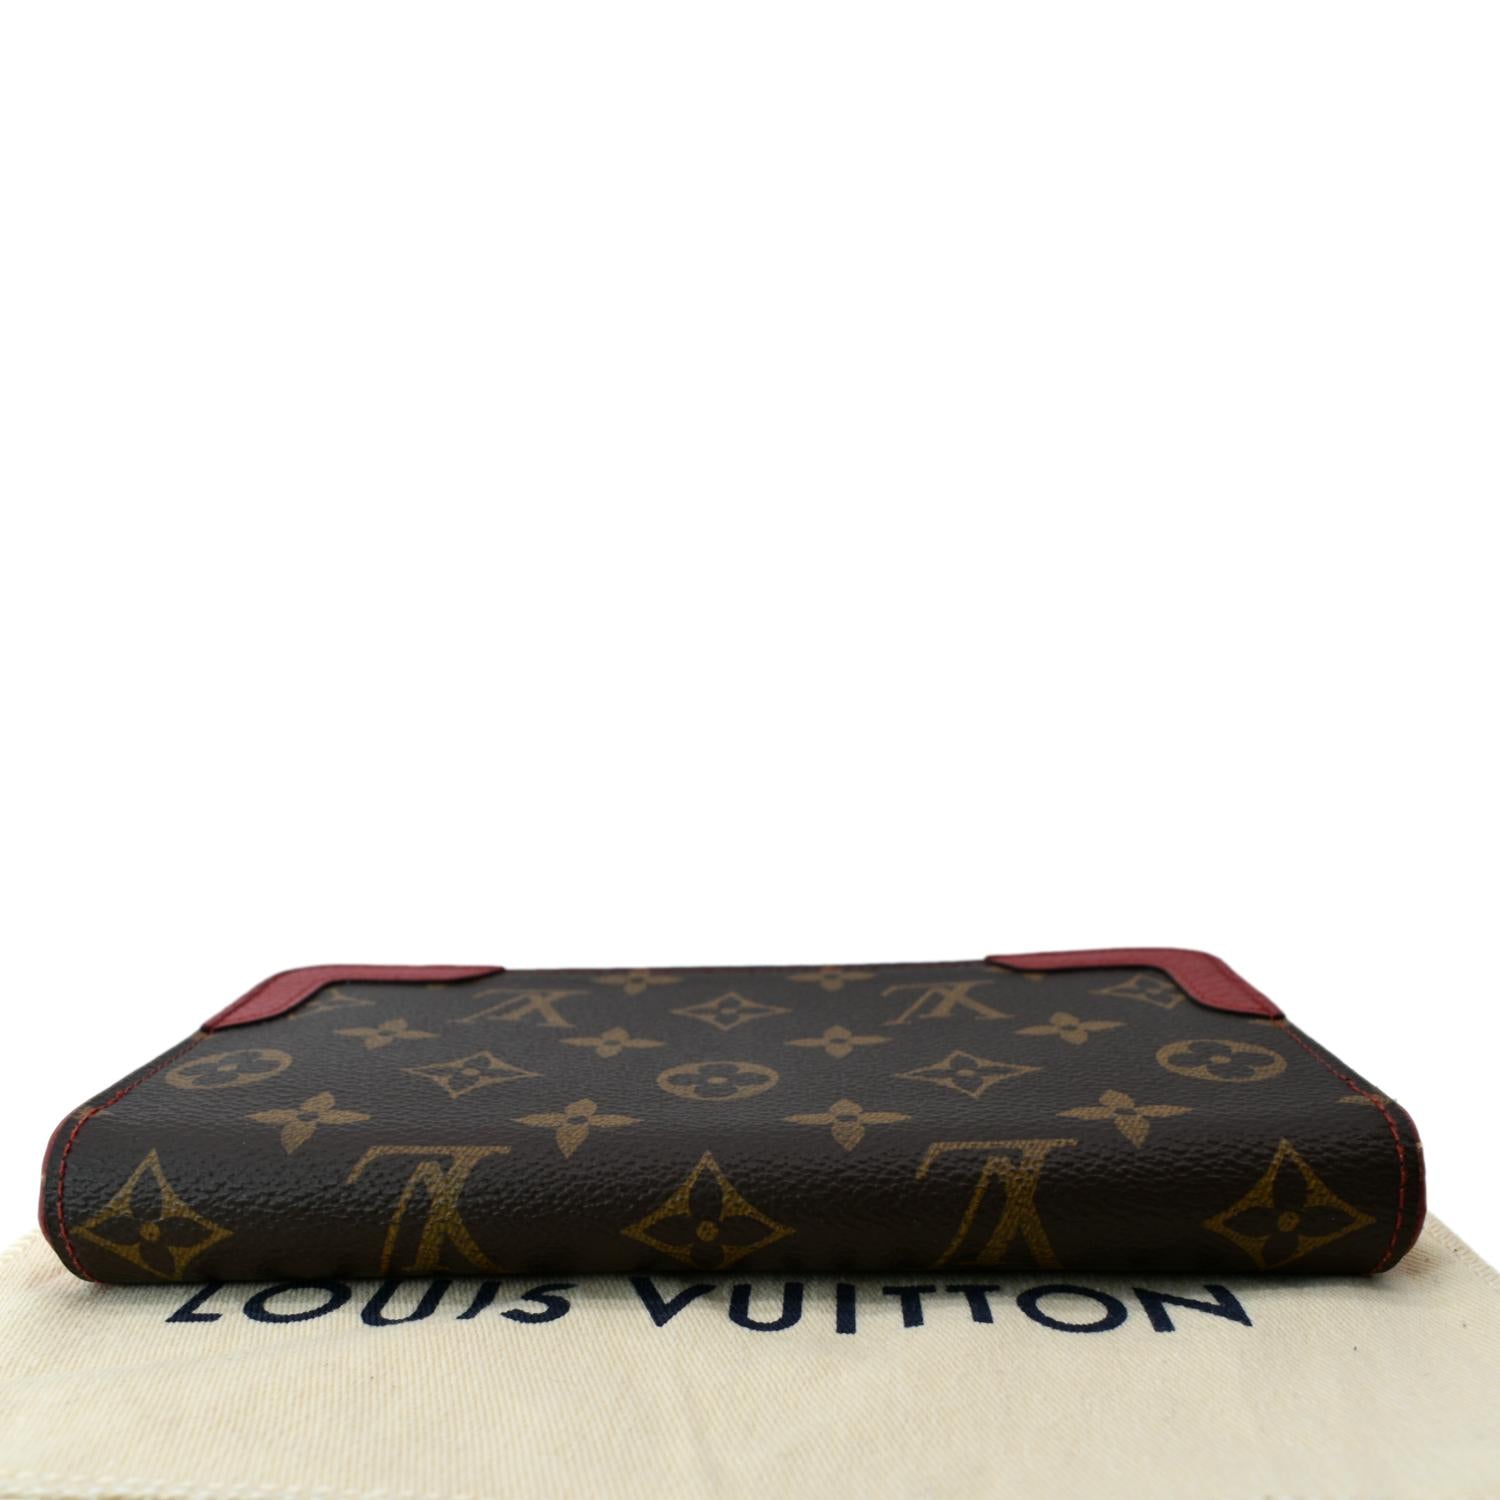 PRELOVED Louis Vuitton Monogram Retiro Zippy Wallet MI1147 100423 –  KimmieBBags LLC